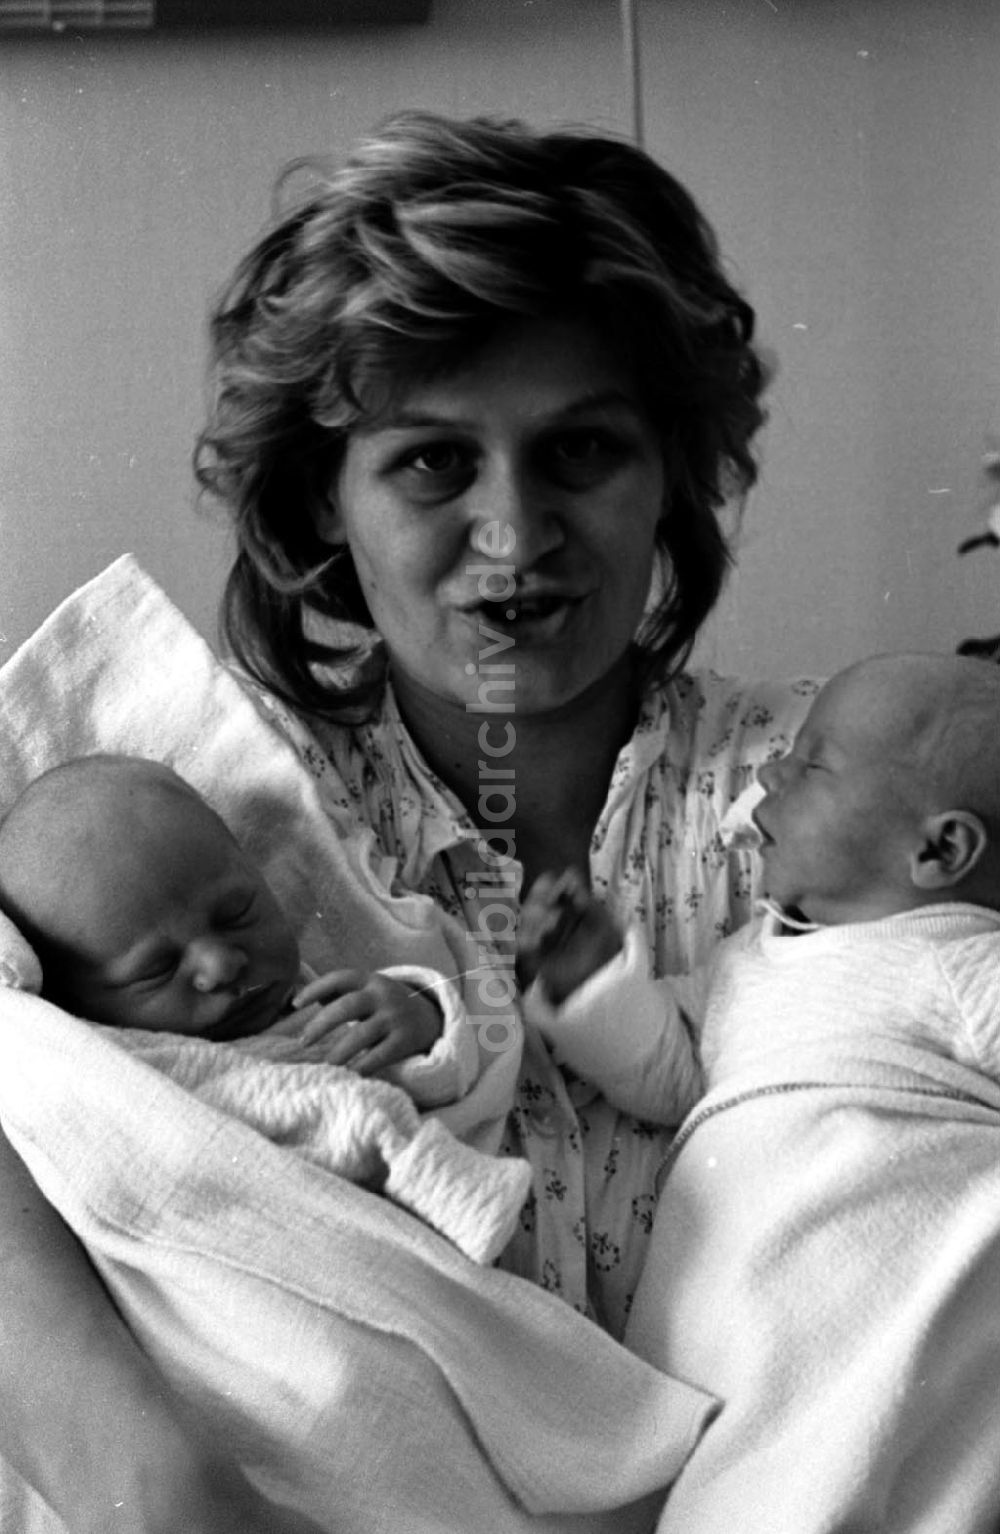 DDR-Fotoarchiv: Berlin - Neugeborene Zwillinge mit ihrer Mutter in Berlin